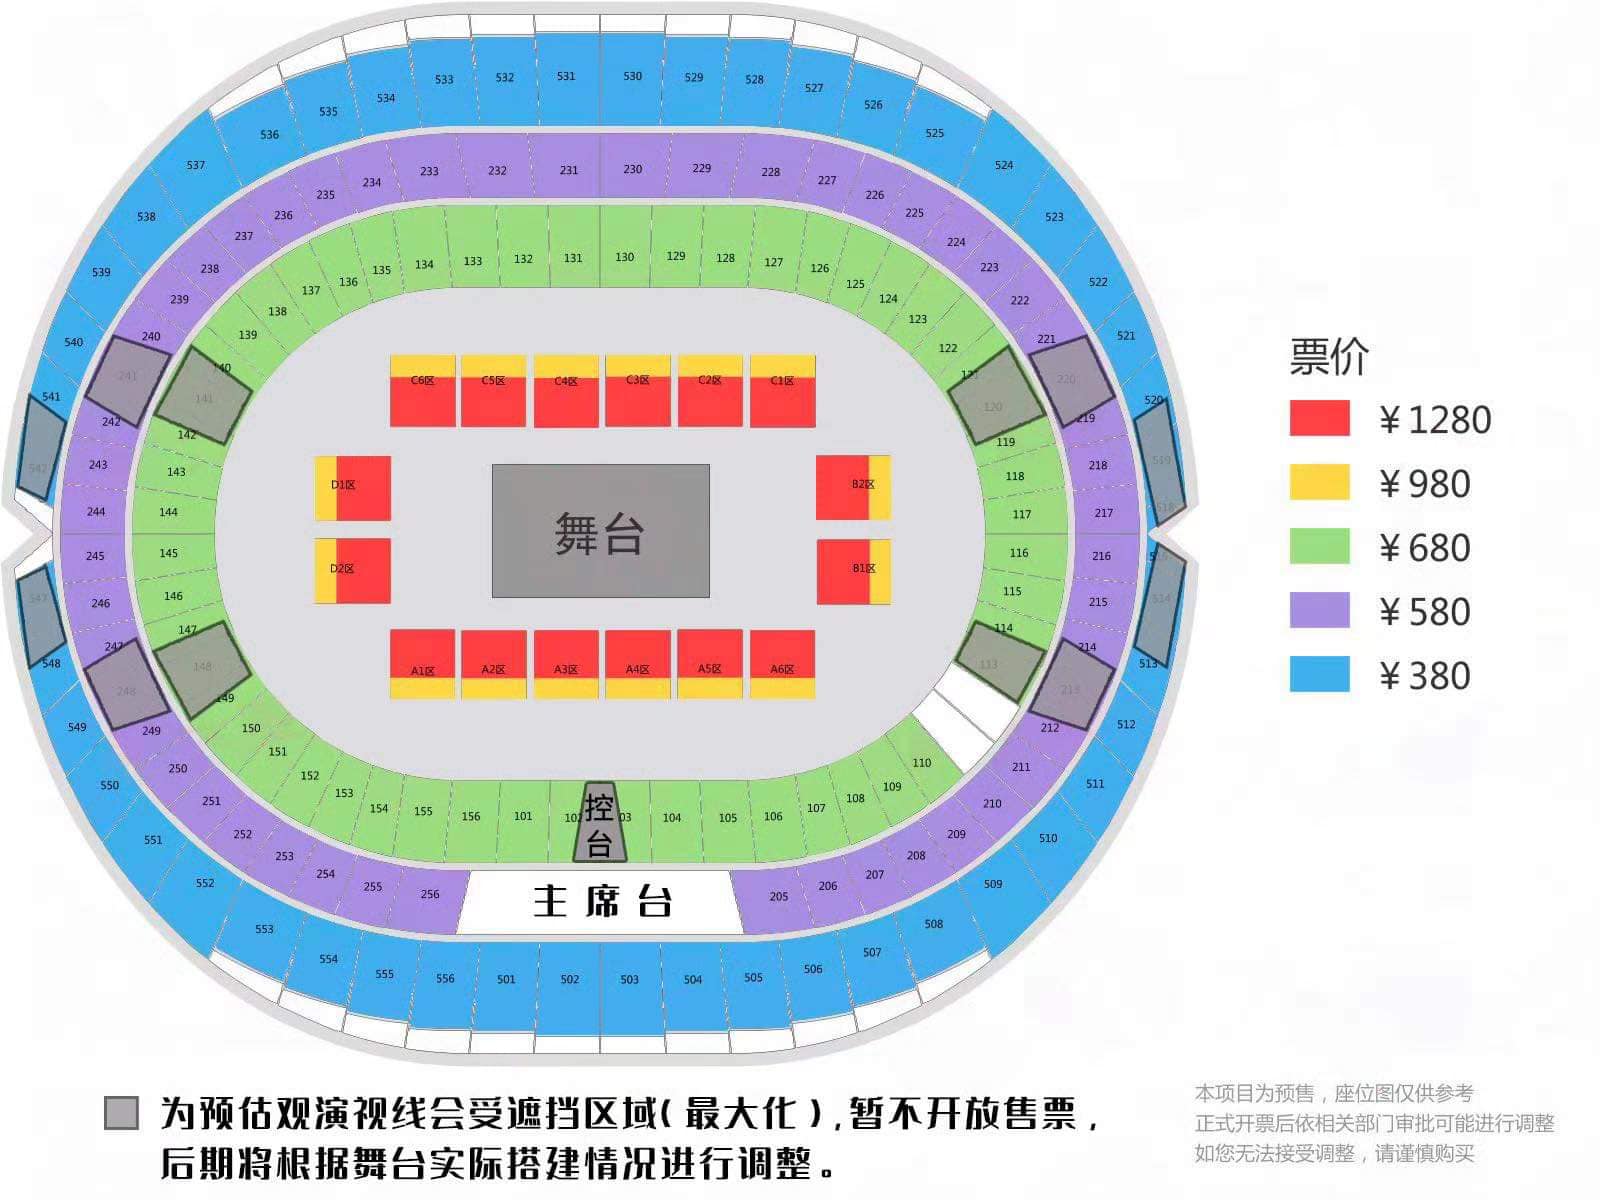 Sơ đồ sân khấu Mars concert Bắc Kinh